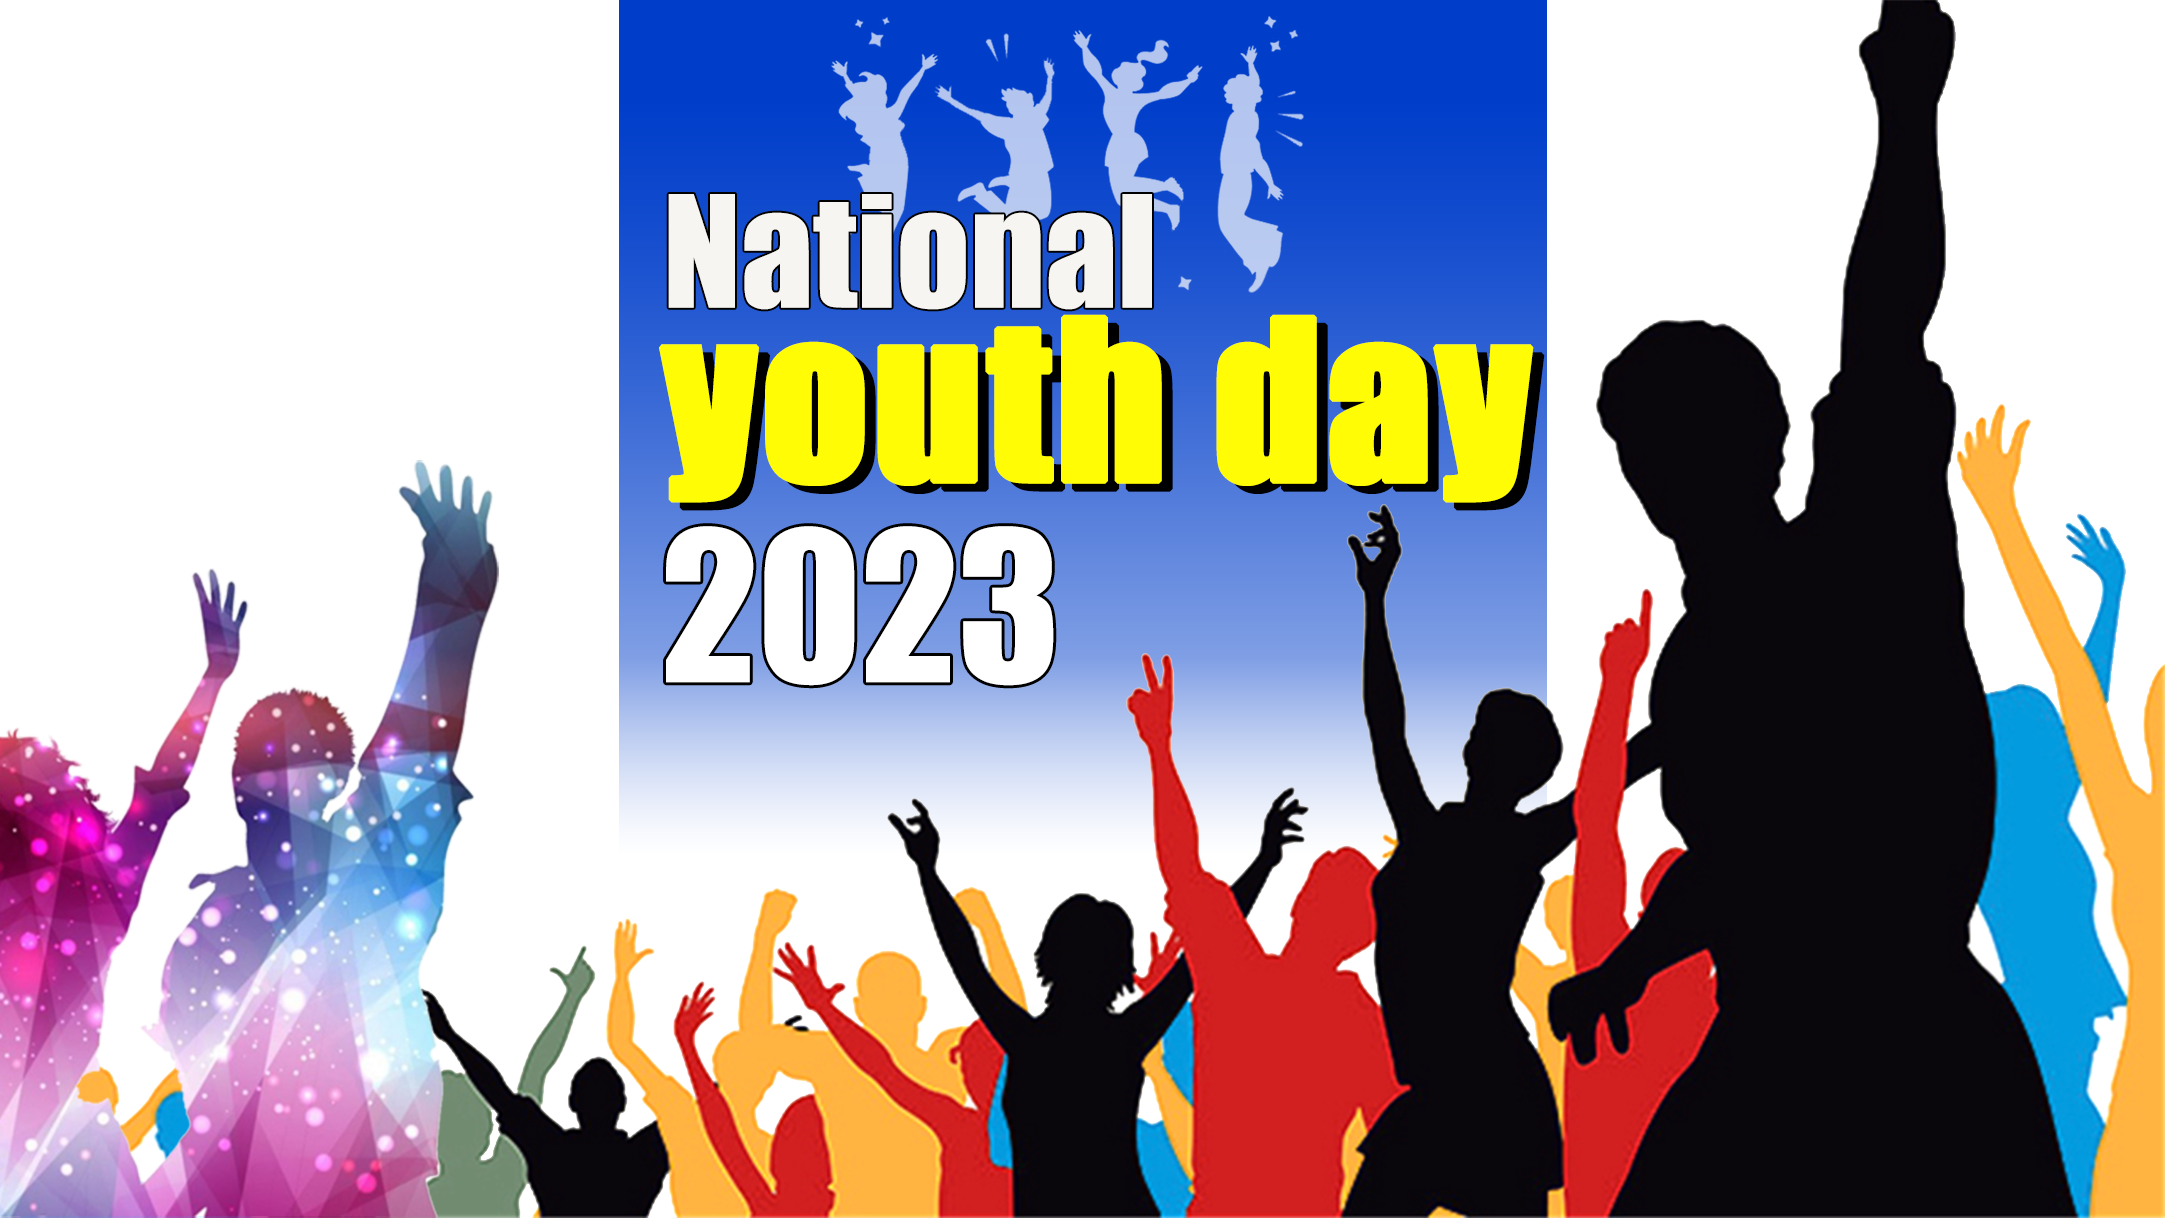 National Youth Day 2023: कब और क्यों मनाया जाता है राष्ट्रीय युवा दिवस, अंतरराष्ट्रीय युवा दिवस से ऐसे है अलग